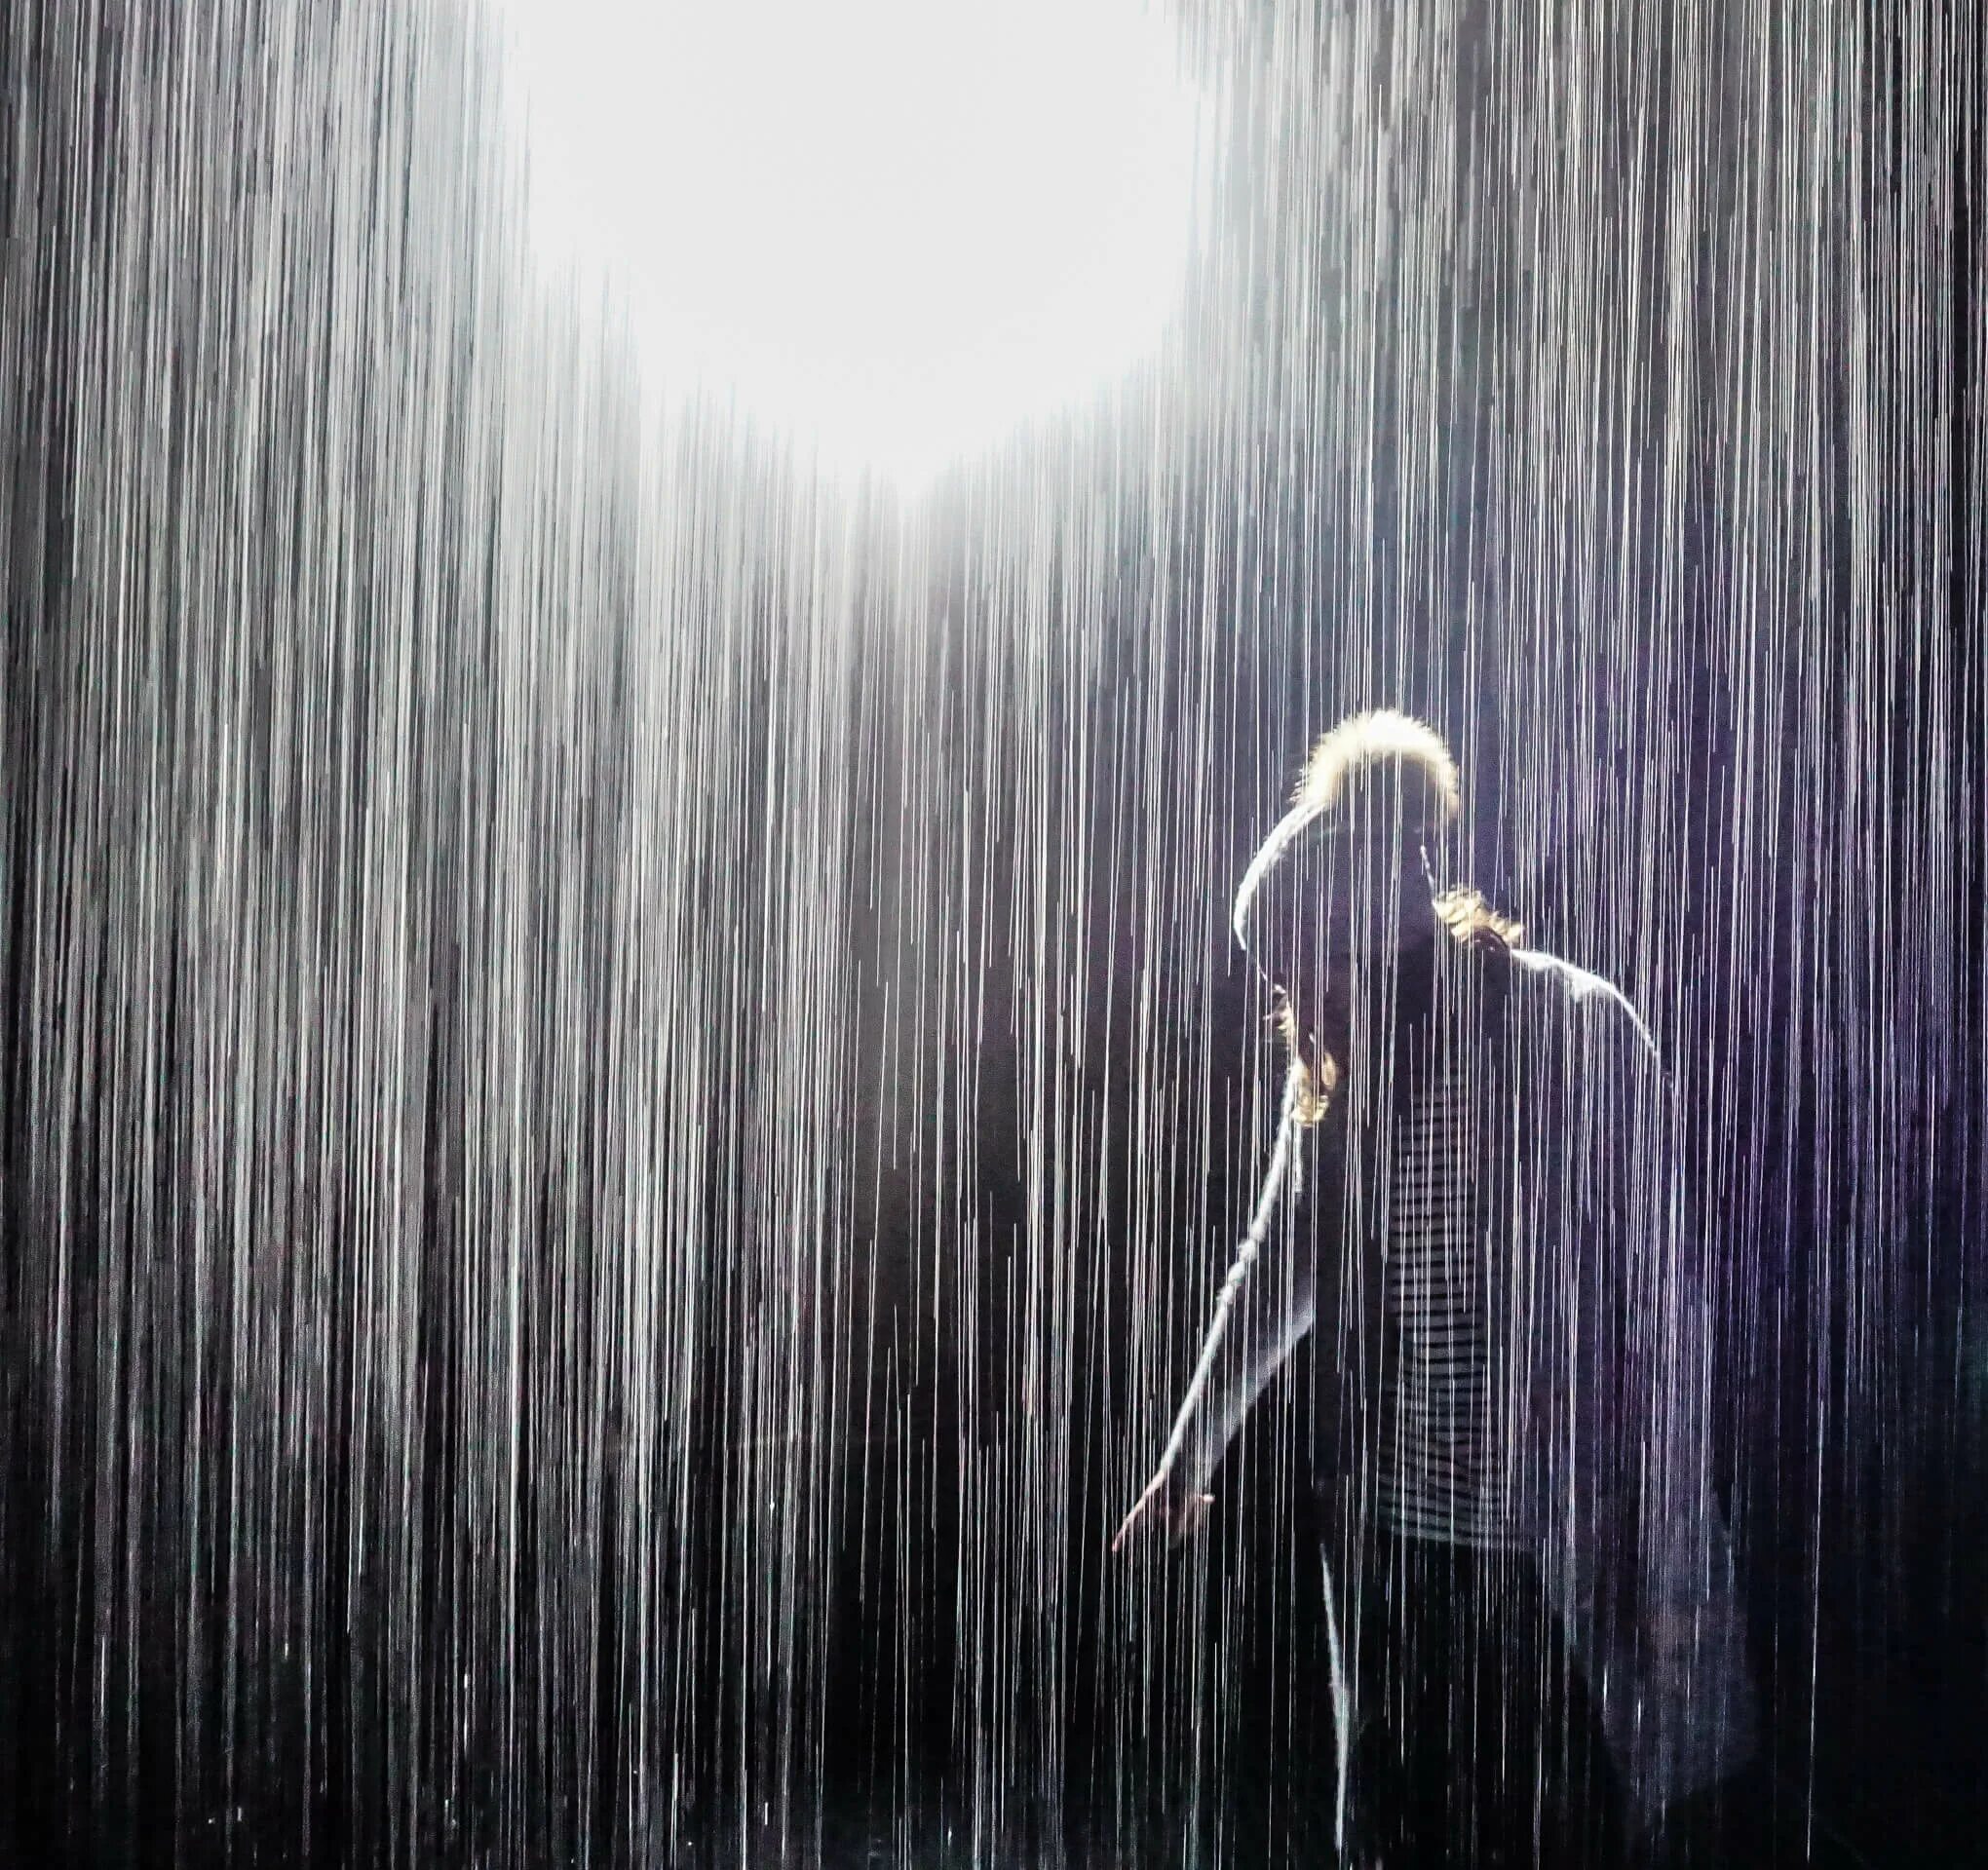 Песни под дождем слушать. Музыкальный дождик. "Мелодия дождя". Нотный дождь. Замок из дождя.